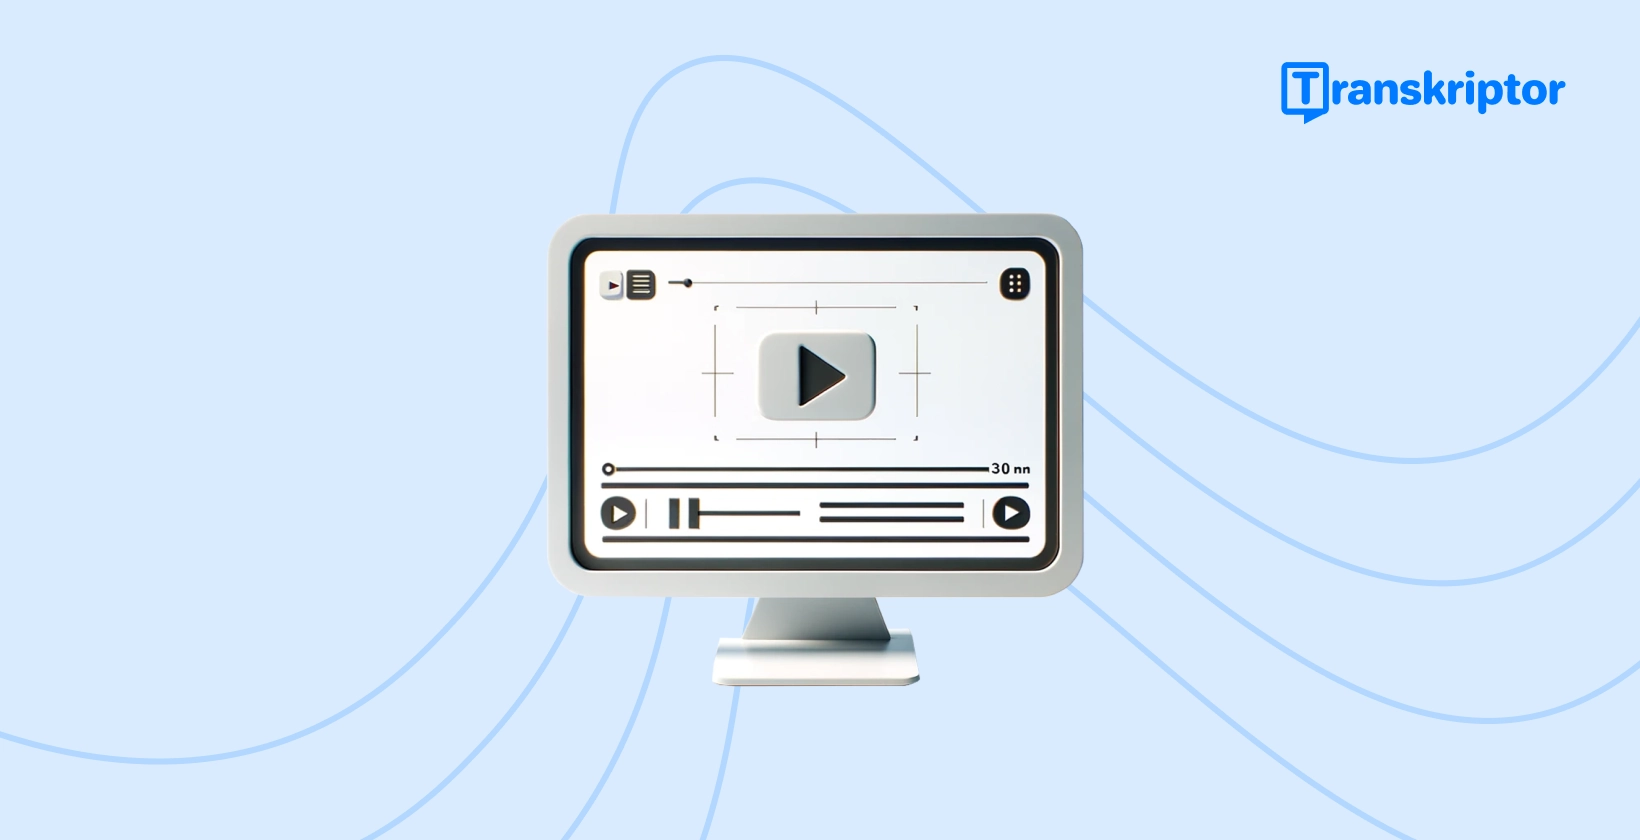 Automaattisen tekstityksen informatiivinen visuaalisuus, jossa näkyy tietokoneen näyttö, jossa on videoliitäntä.